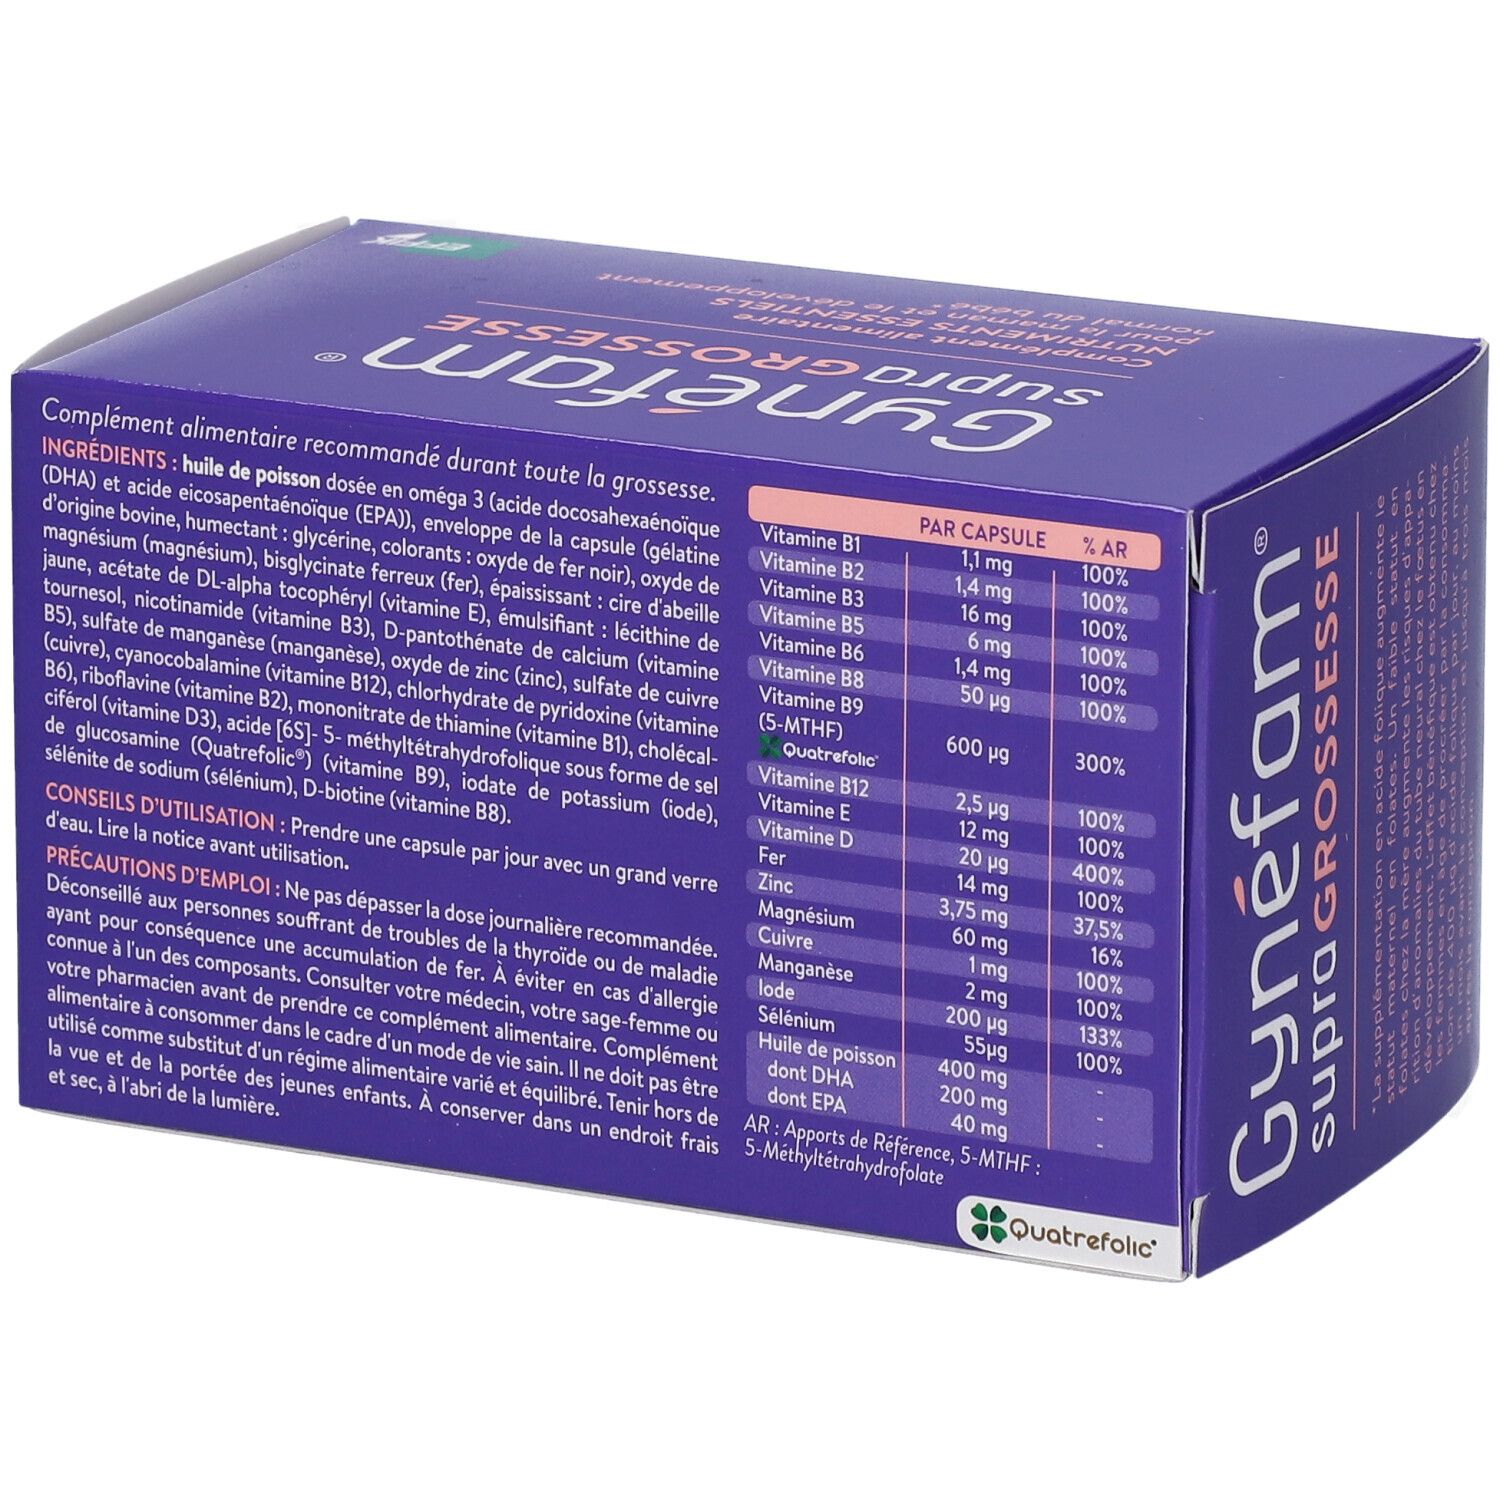 Gynéfam Supra Grossesse - 90 capsules - Pharmacie en ligne